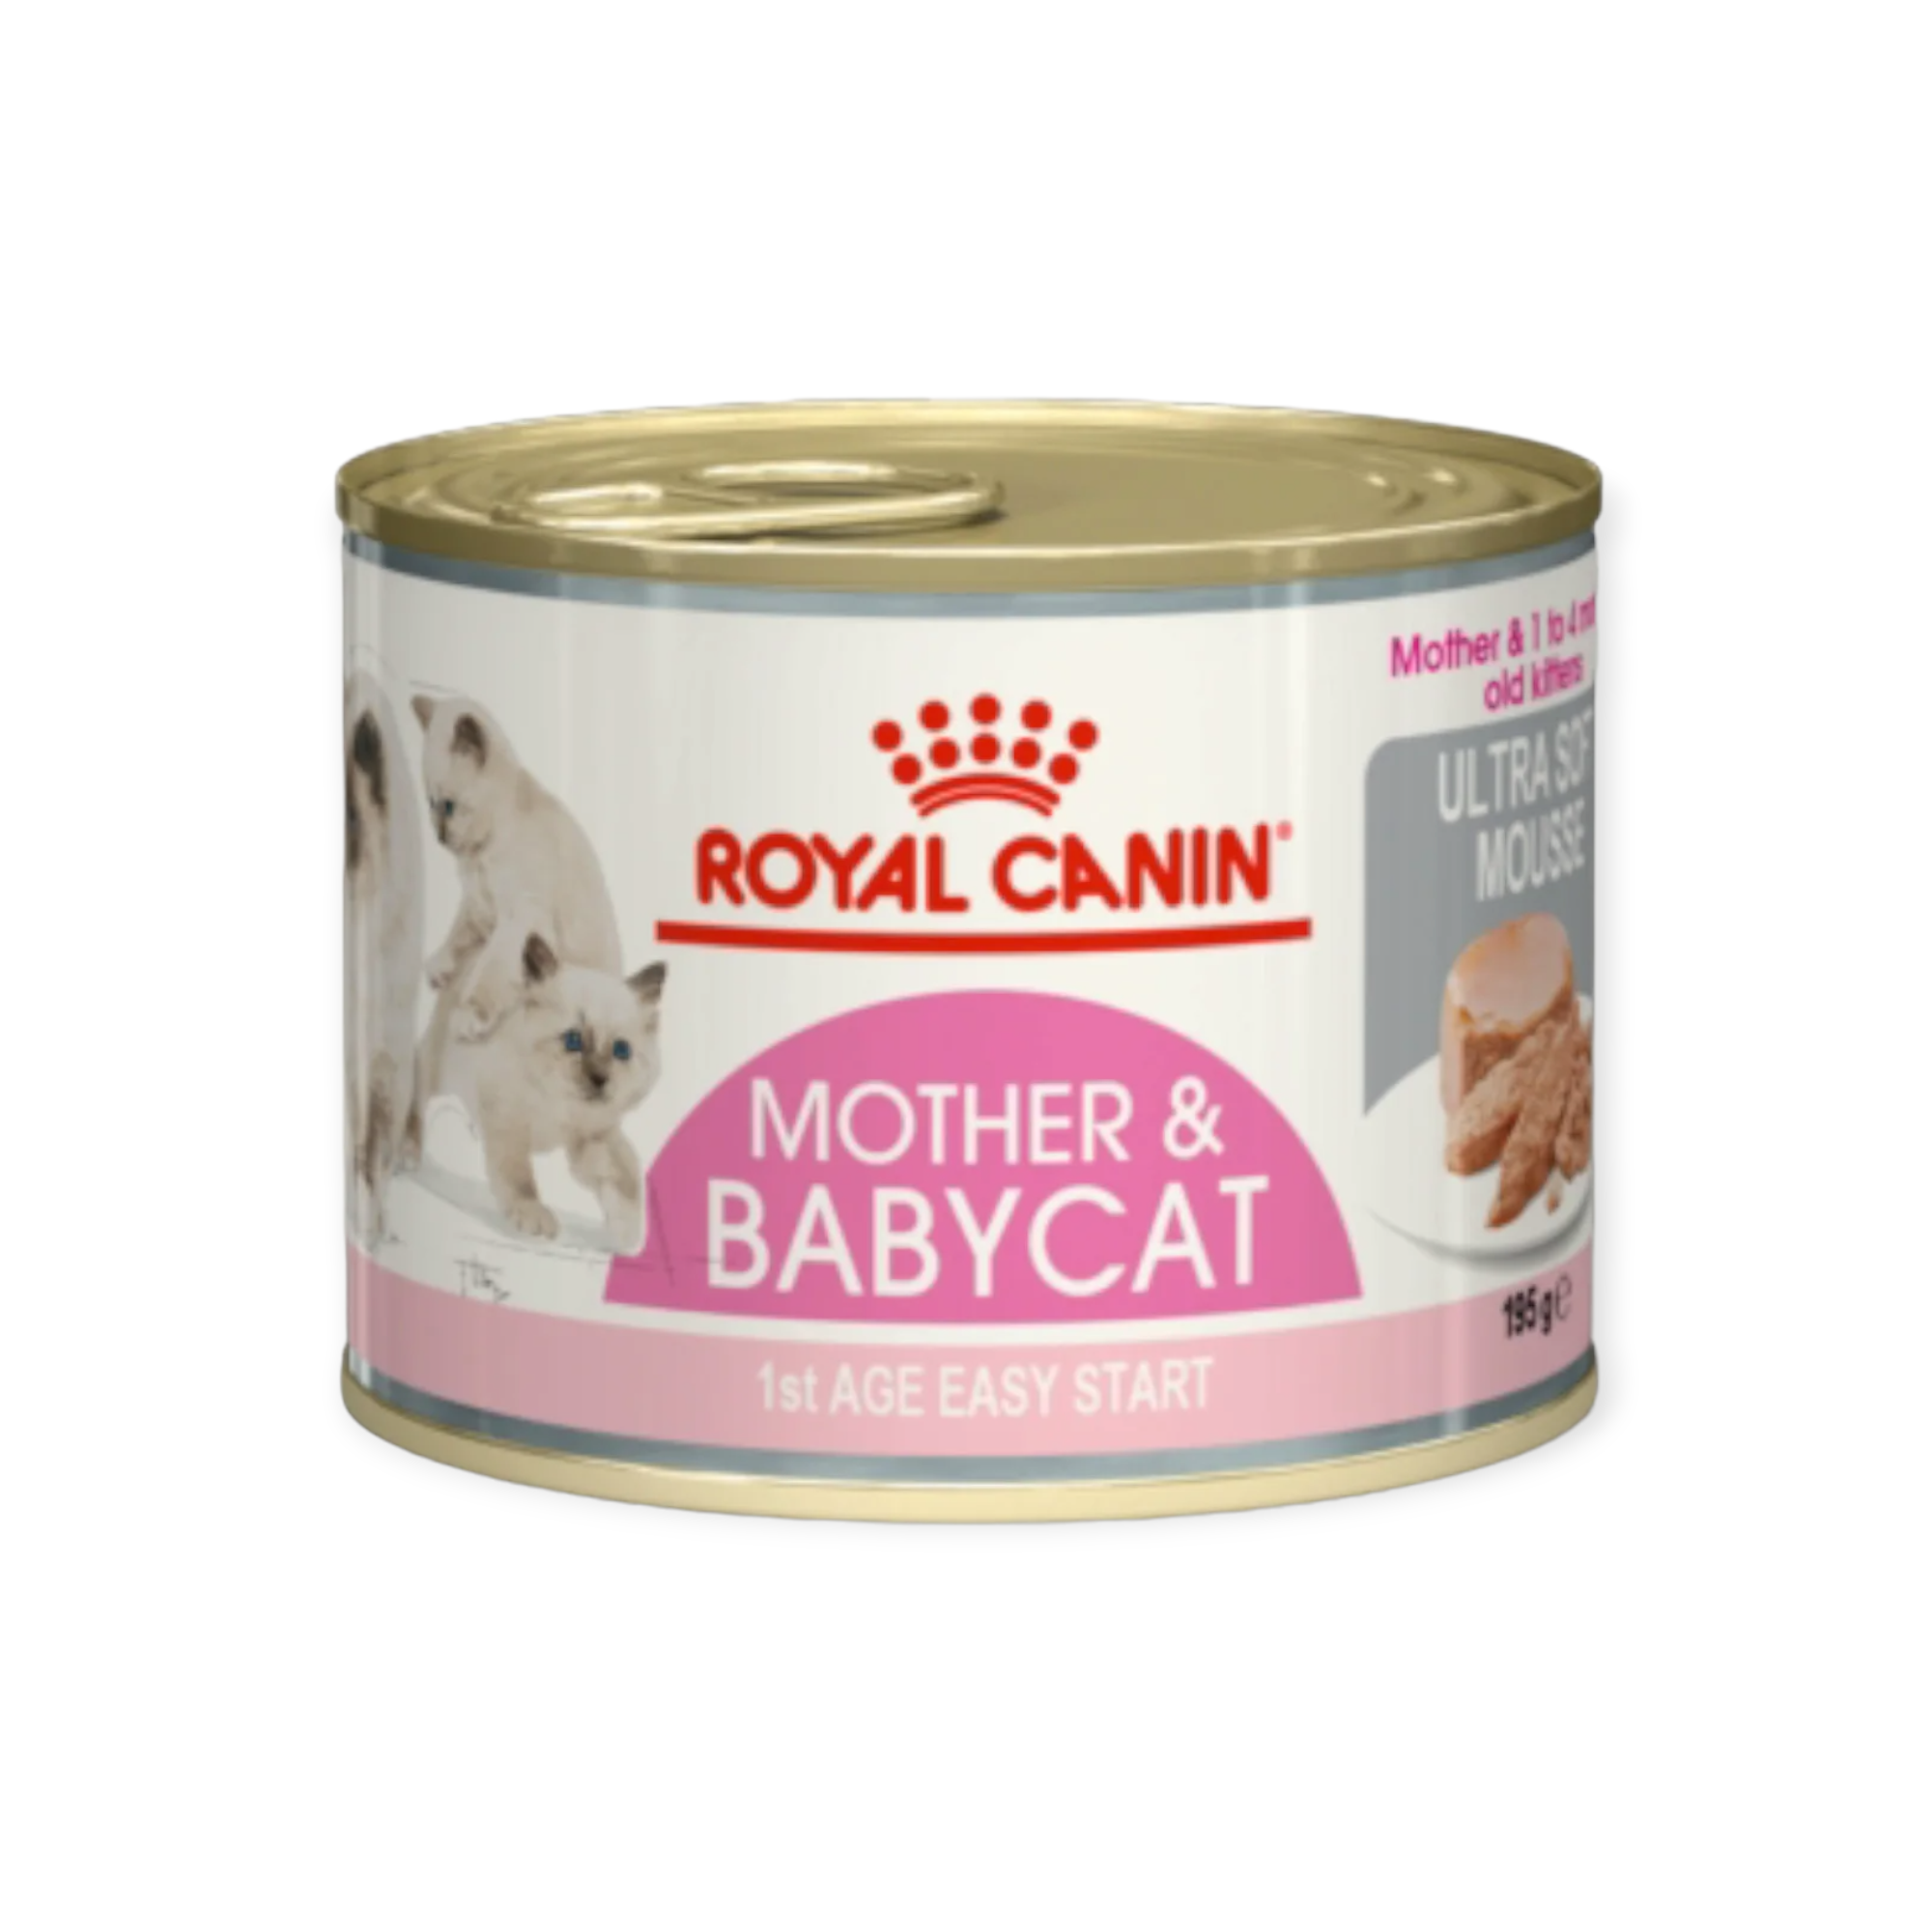 Υγρή Τροφή Γάτας Royal Canin Mother & Babycat Ultra Soft Mousse 195gr